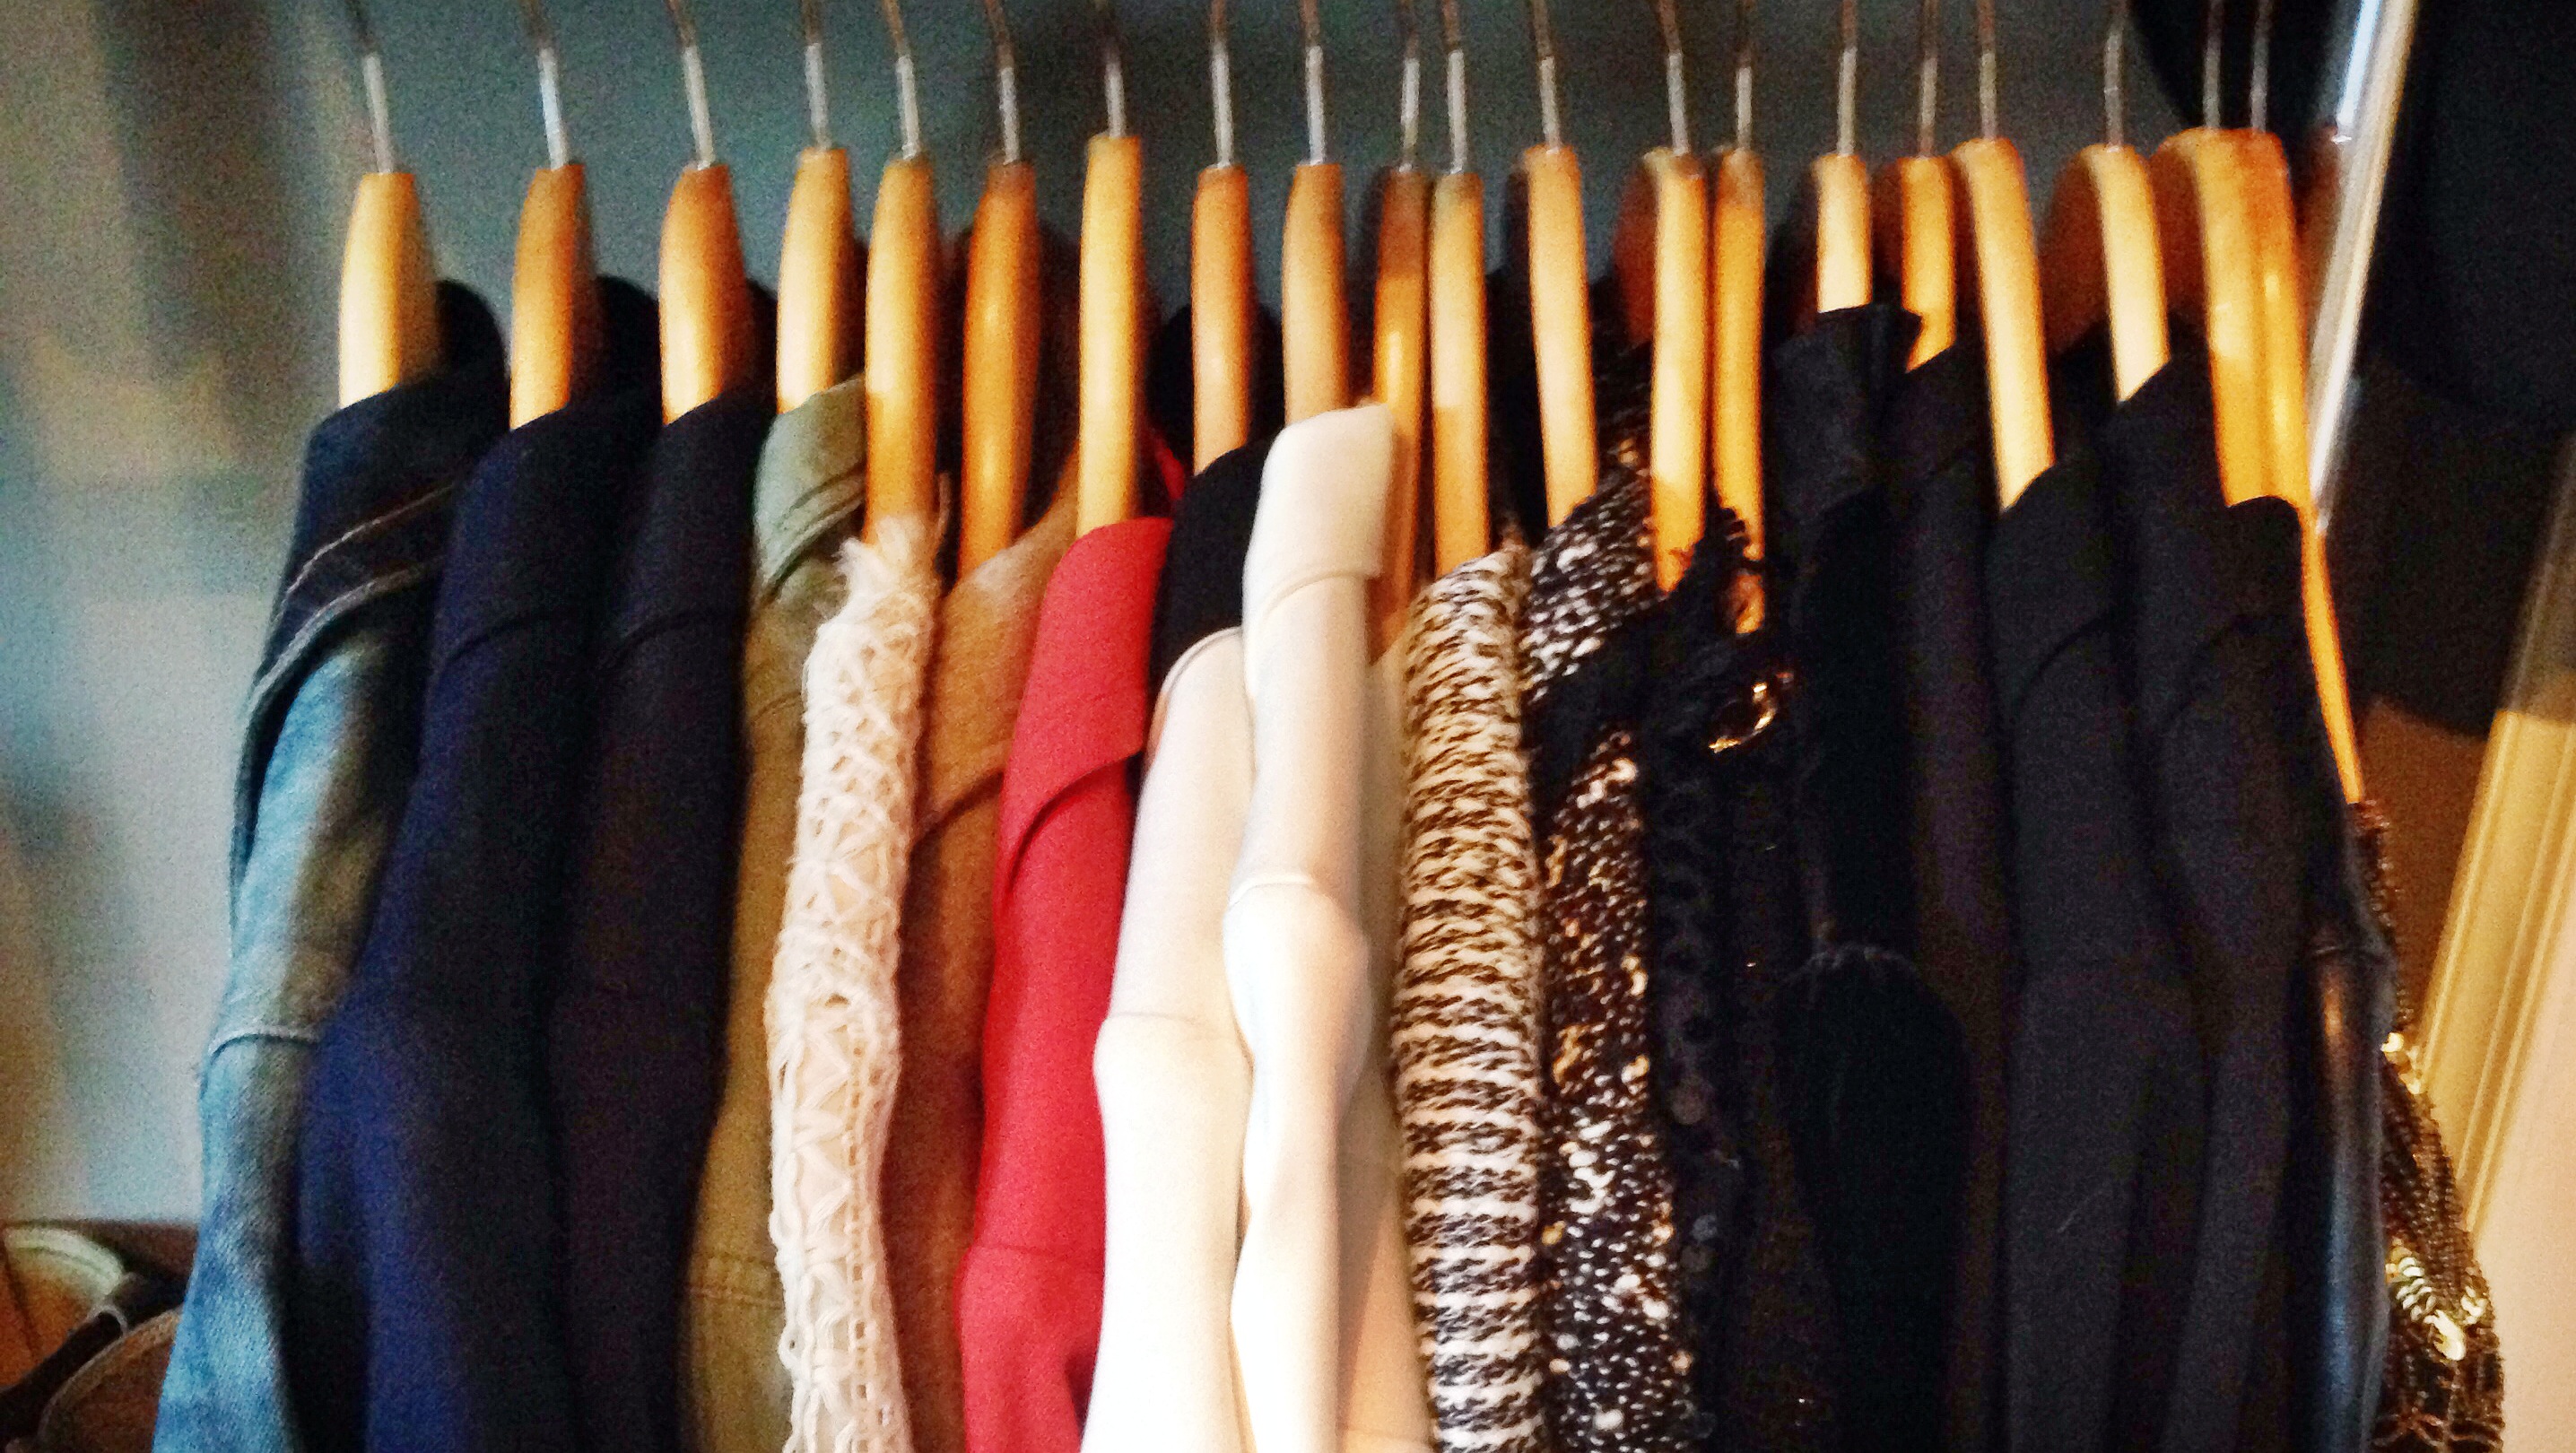 clothes wallpaper,closet,room,boutique,wardrobe,textile